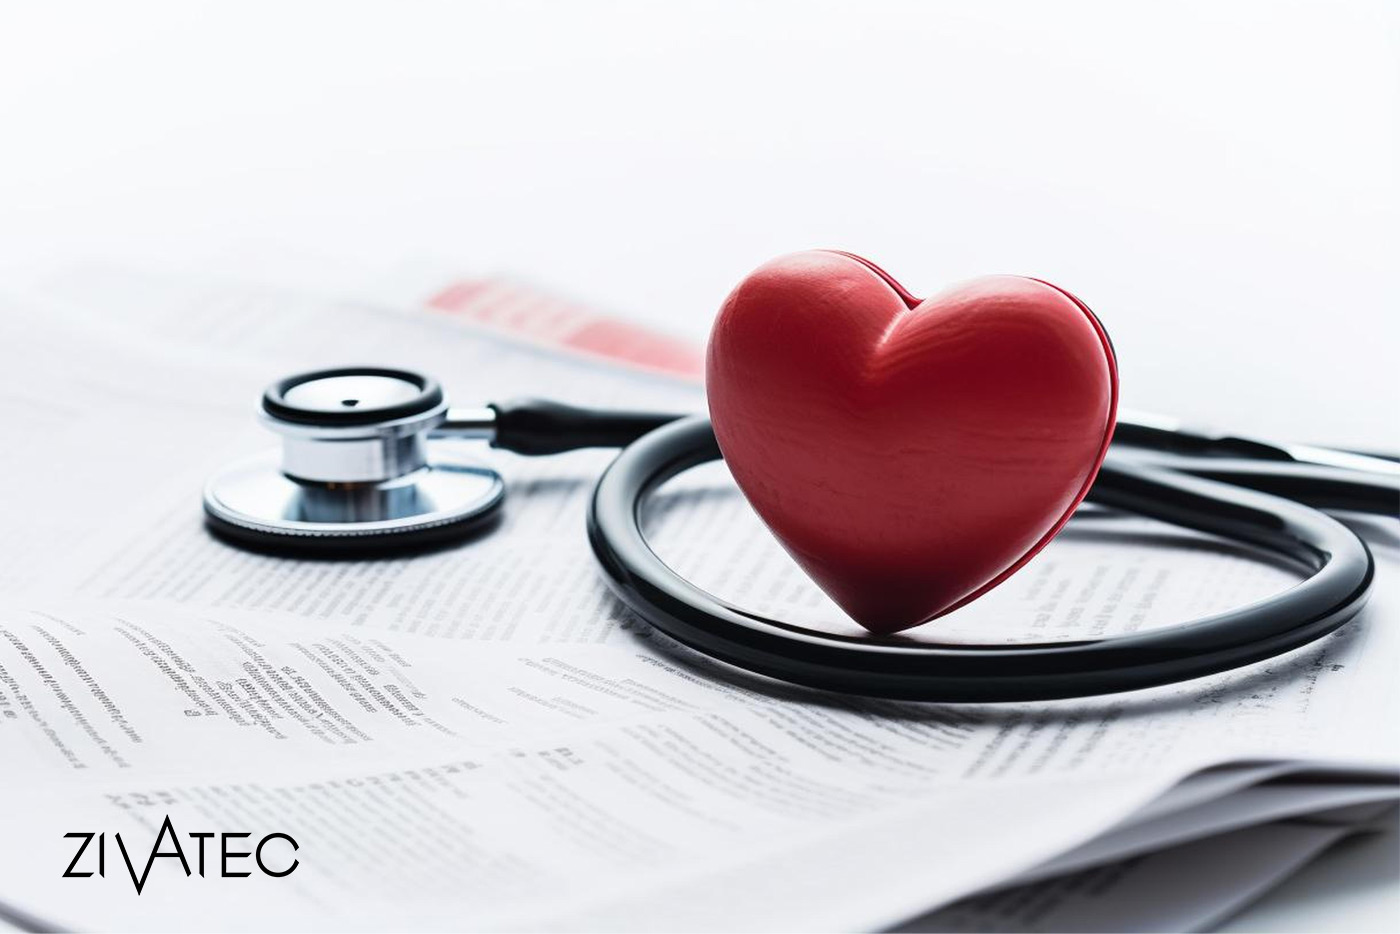 آیا تشخیص بیماری قلبی با نوار قلب ممکن است؟